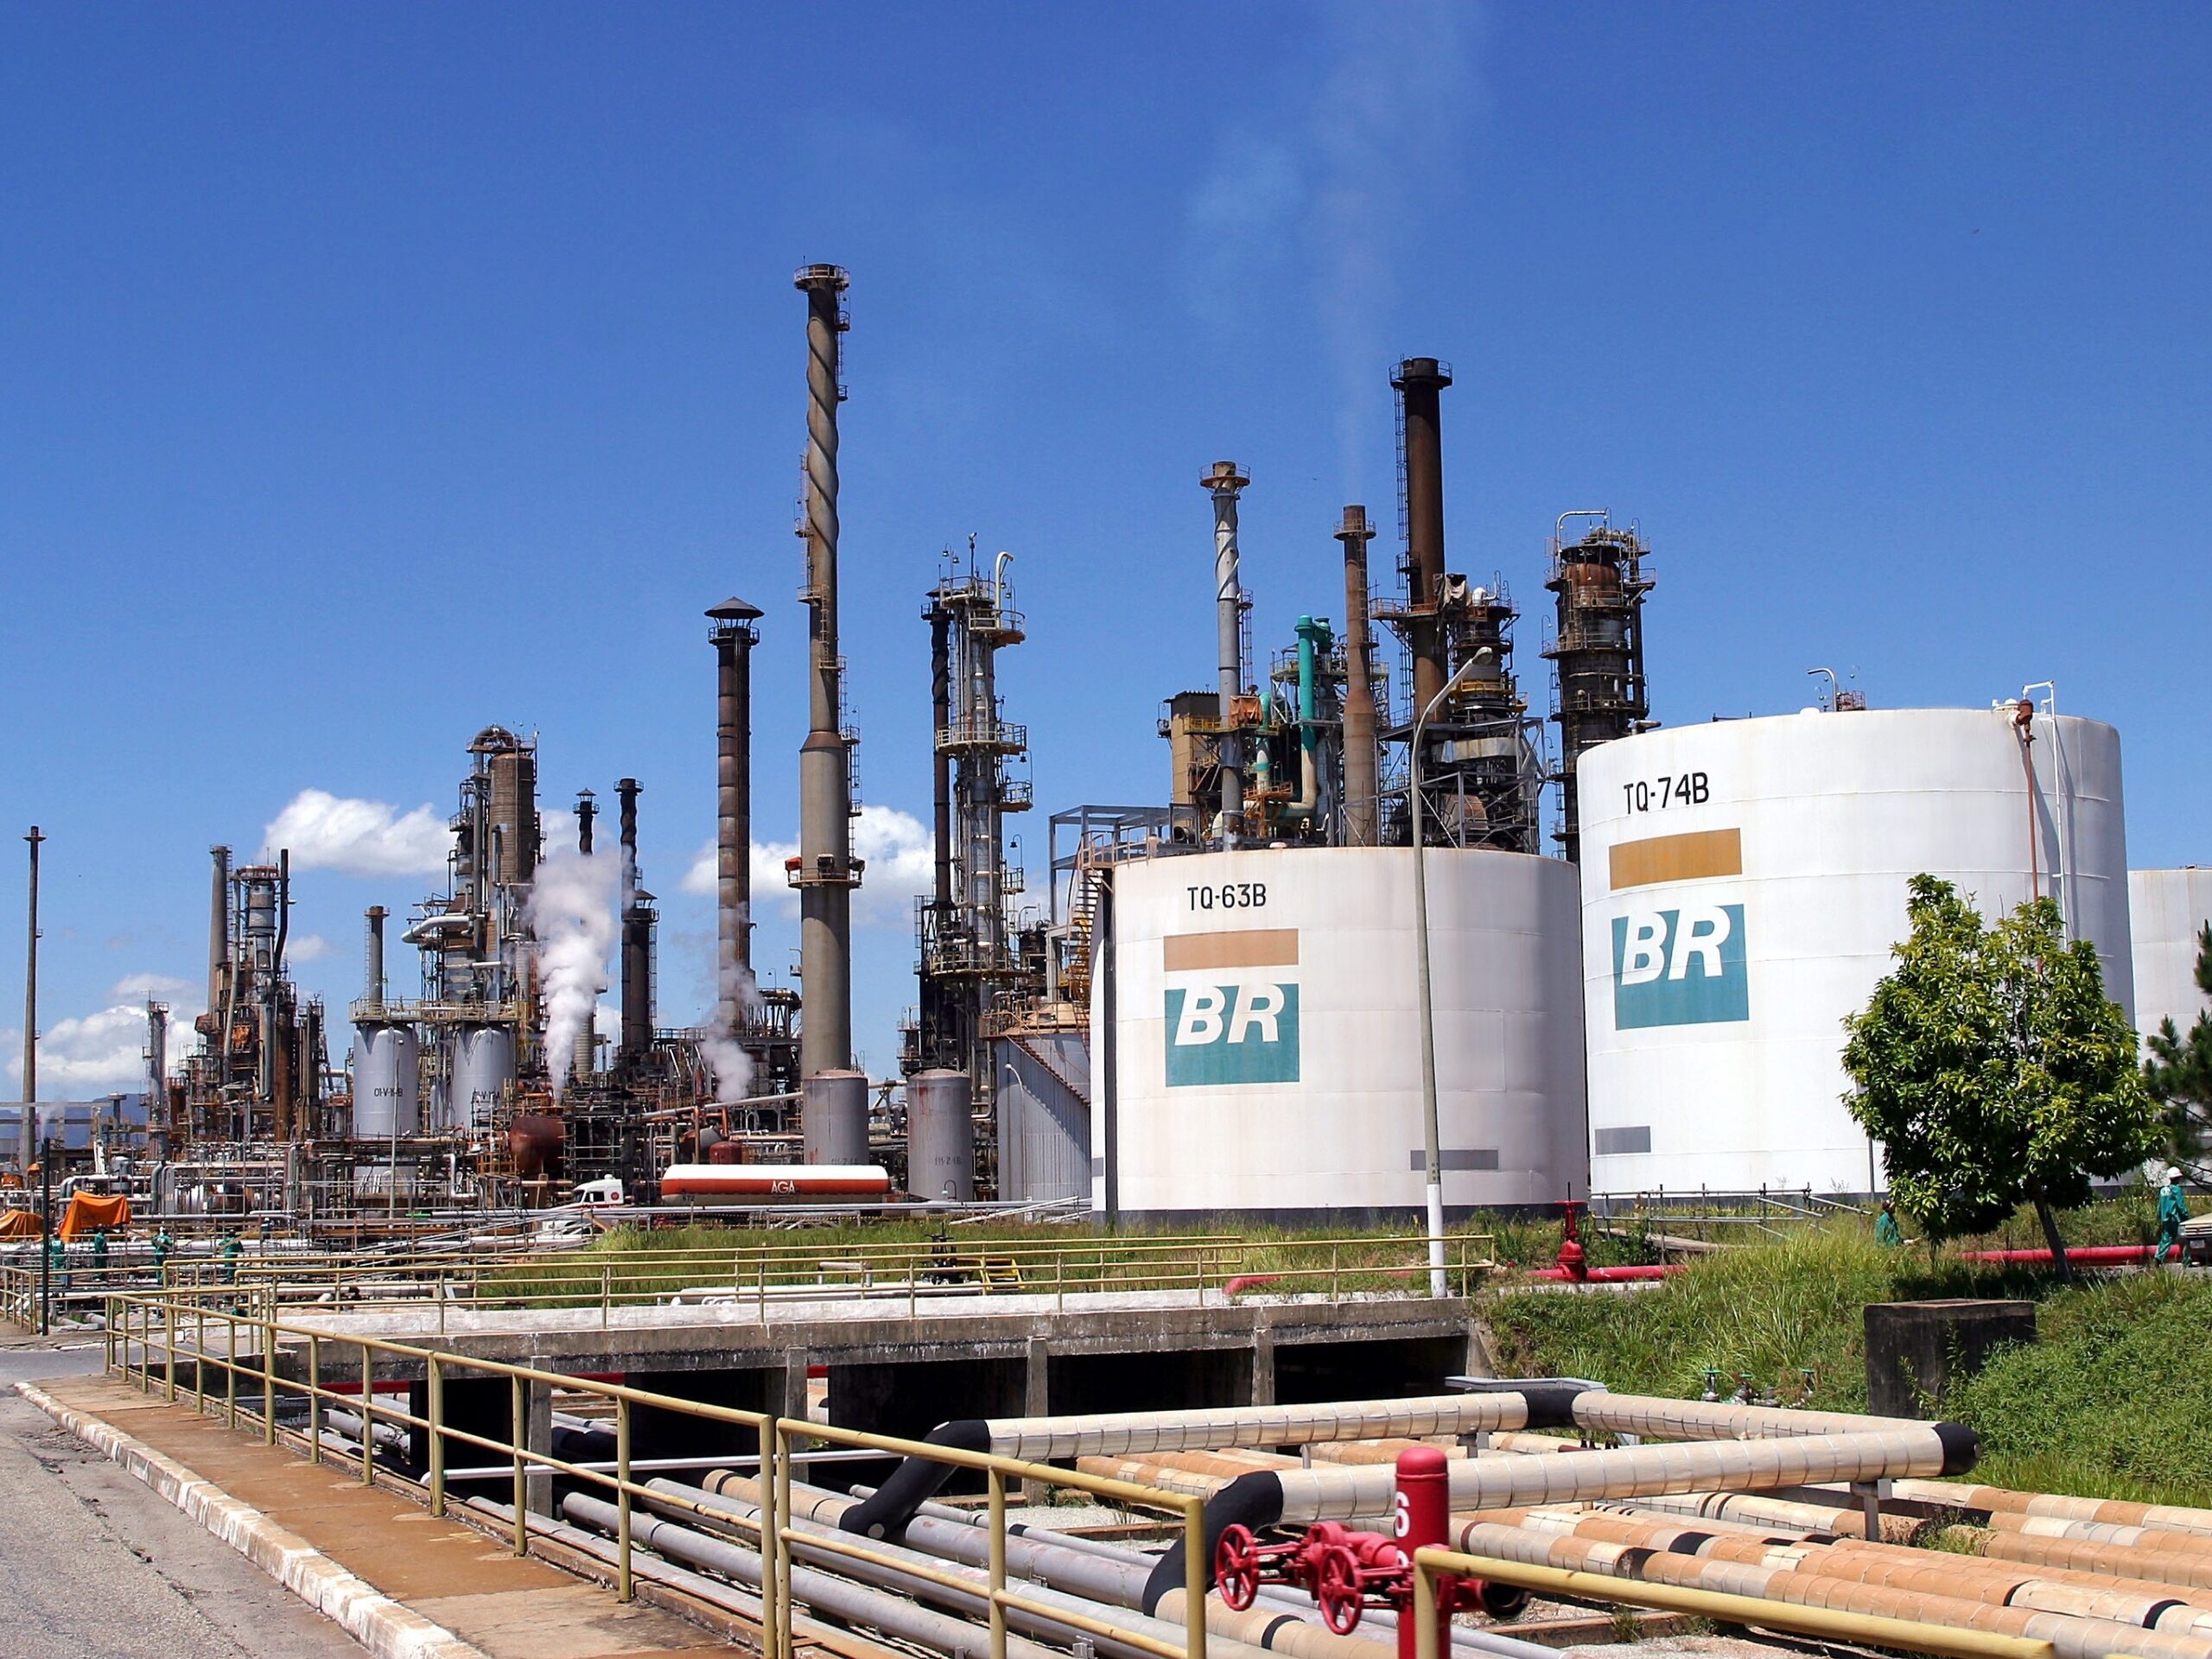 A Petrobras afirmou que é capaz de processar mais 500 mil barris/dia de petróleo bruto sem a necessidade de construir novas refinarias. A empresa tem em vista aumentar a capacidade de suas plantas de refino existentes no mercado nacional.